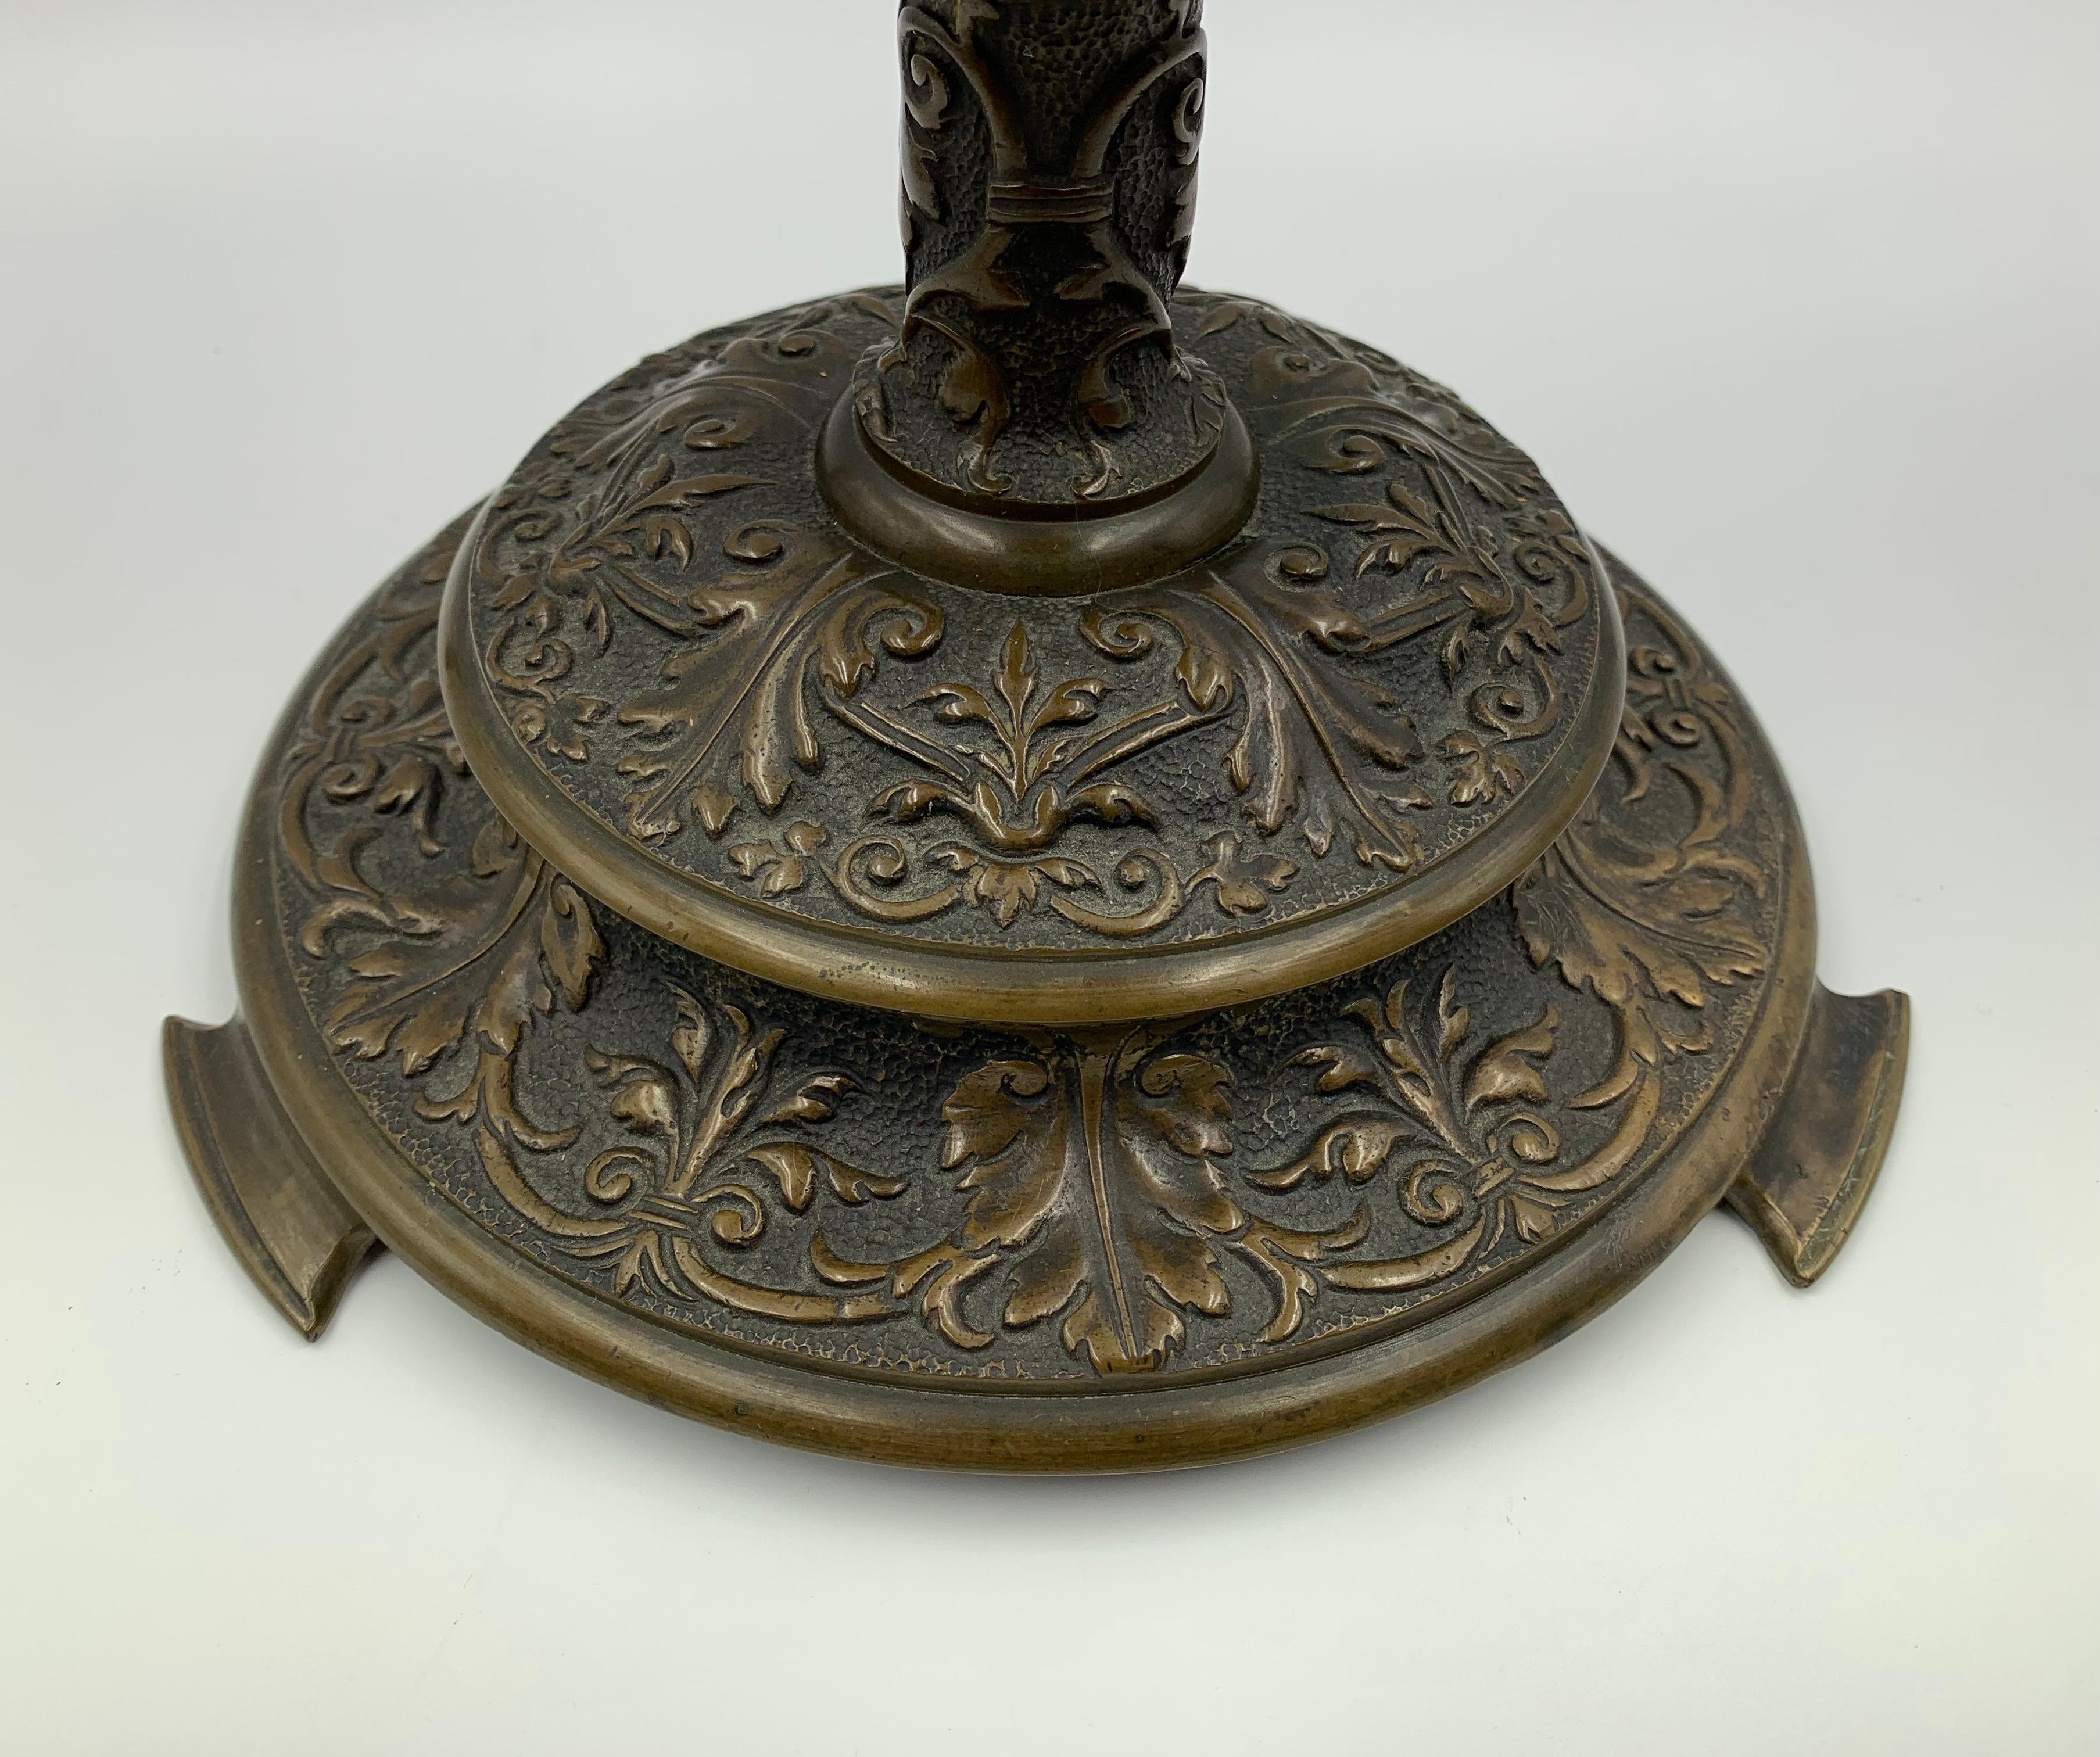 Belle paire de chandeliers en bronze patiné de style Renaissance à la manière d'Edward F. Caldwell, fin du 19e siècle.
Patine d'origine brun moyen avec une belle brillance adaptée à l'âge, excellents détails. Les chapiteaux sont décorés de motifs